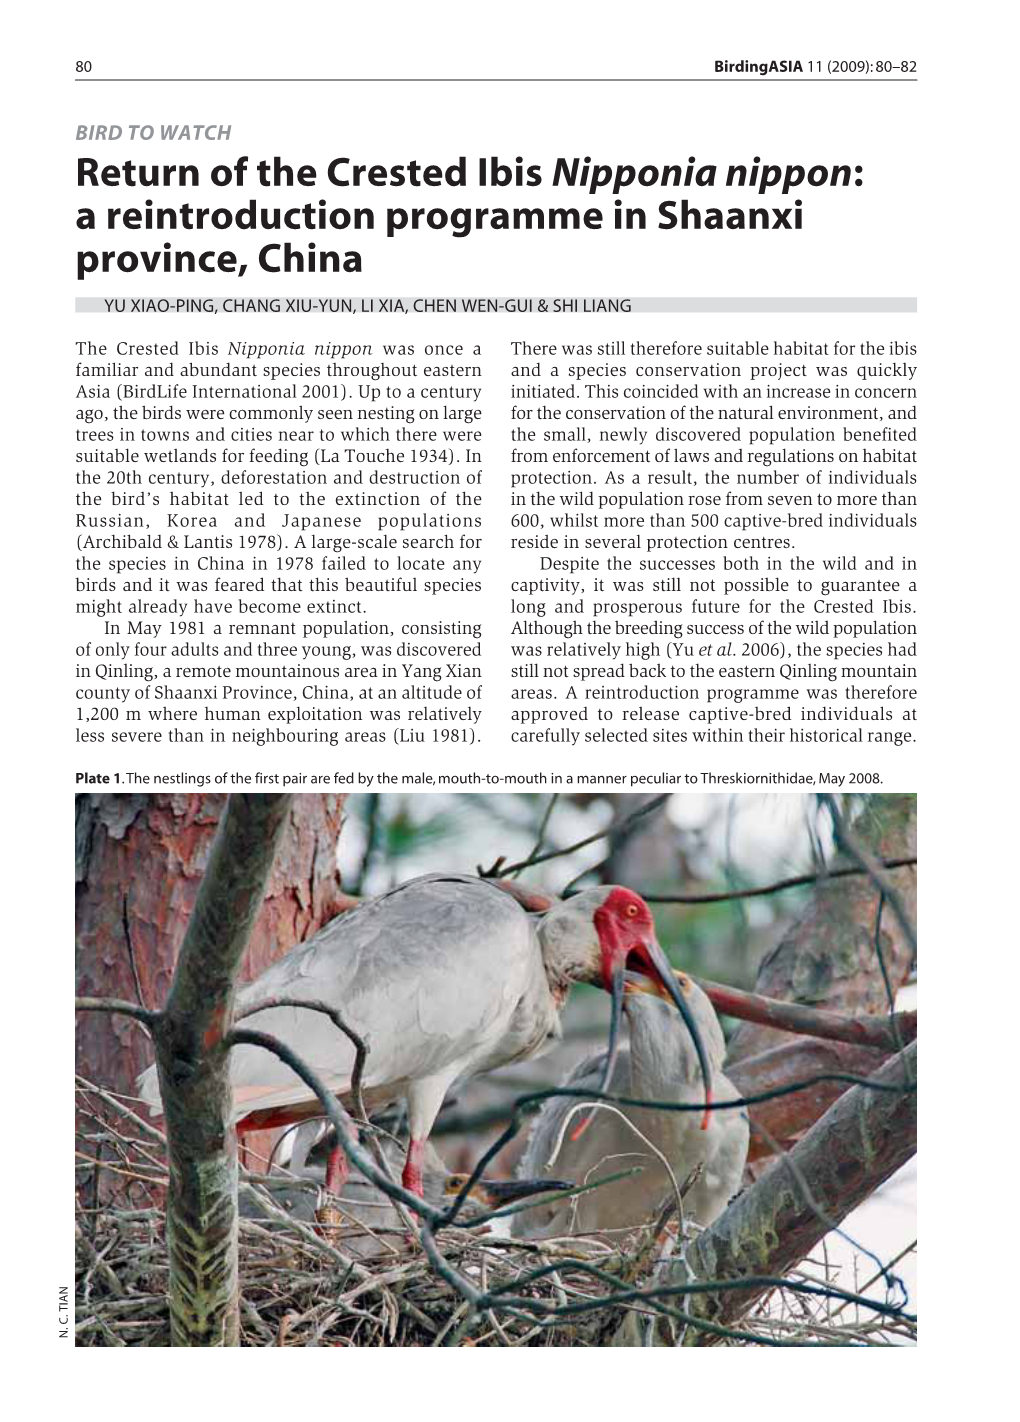 Return of the Crested Ibis Nipponia Nippon: a Reintroduction Programme in Shaanxi Province, China YU XIAO-PING, CHANG XIU-YUN, LI XIA, CHEN WEN-GUI & SHI LIANG